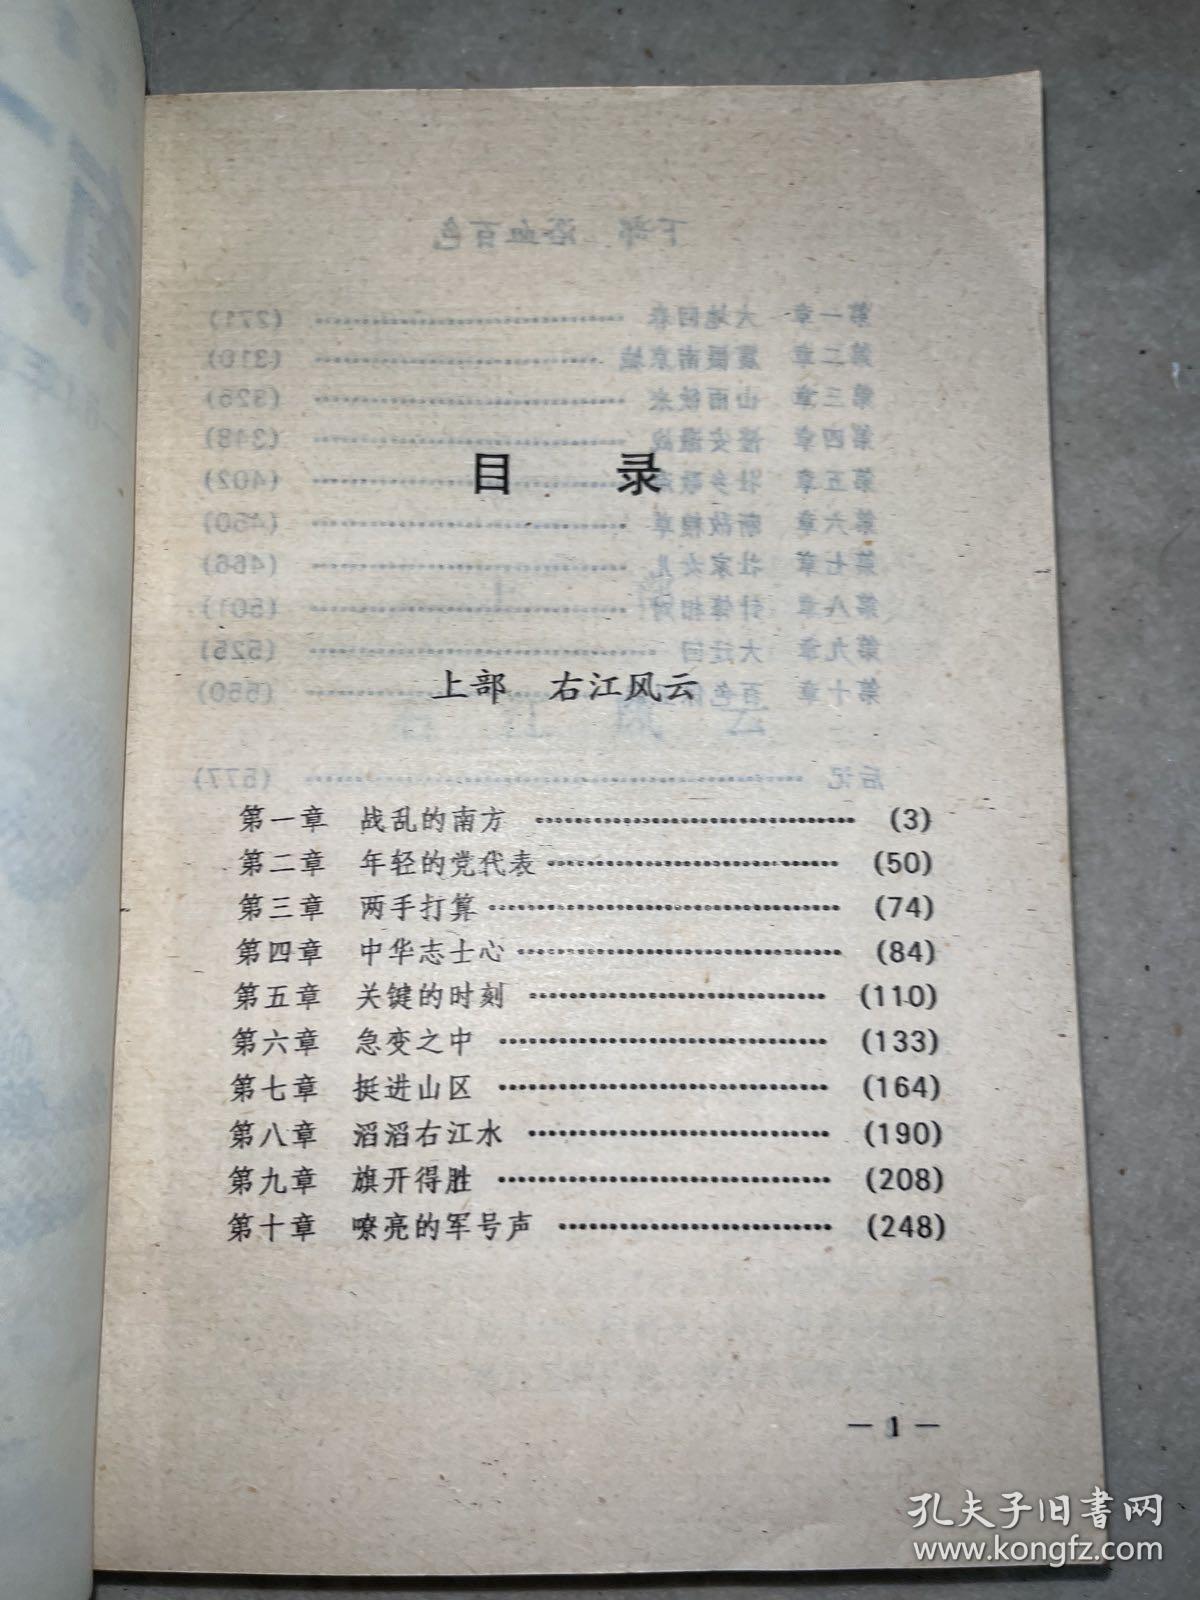 南方惊雷——64年前邓小平壮丽一页